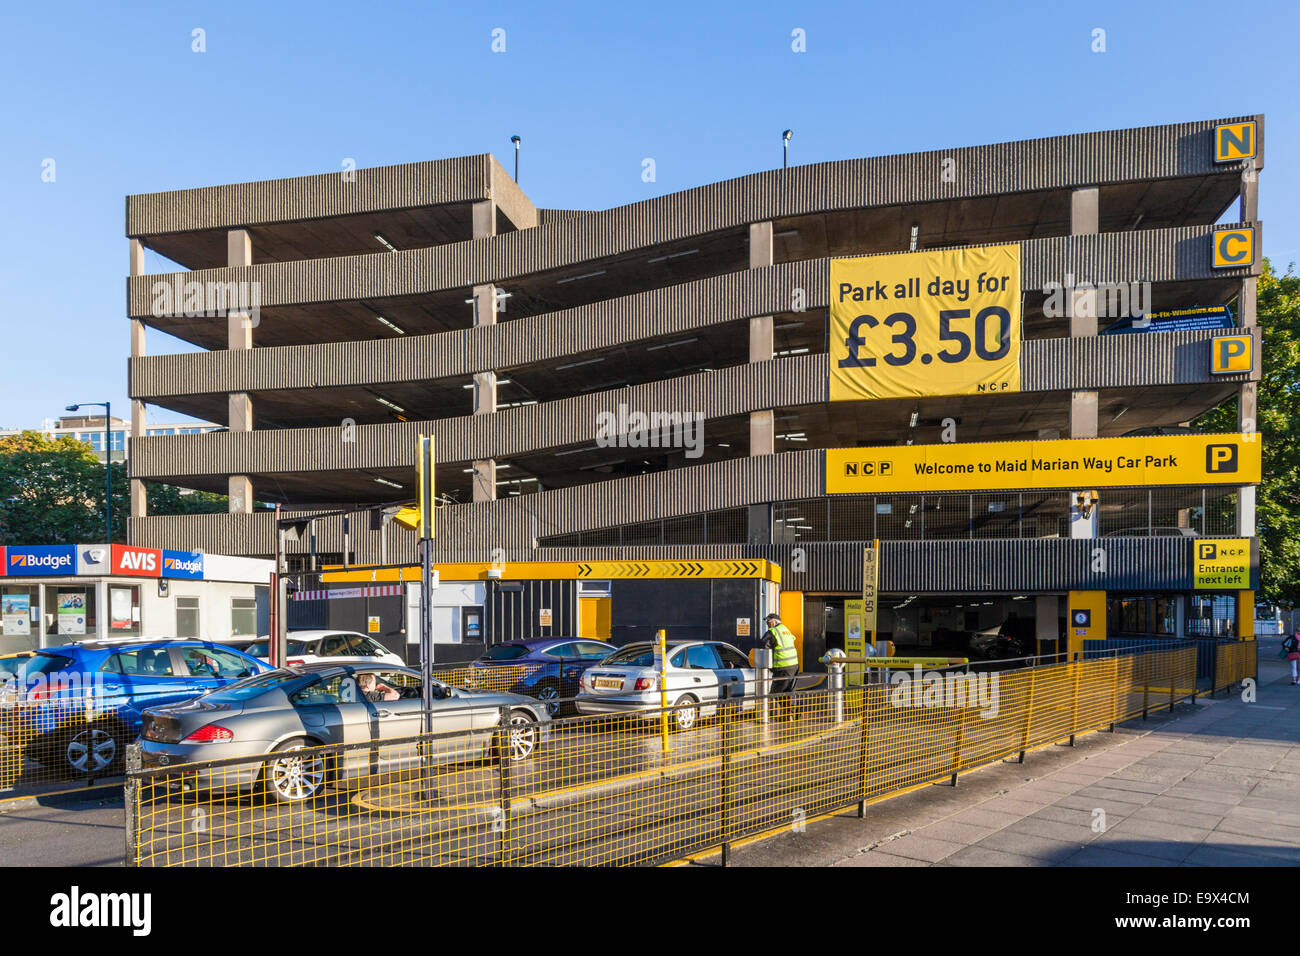 Parking public avec des bannières publicitaires bon marché toute la journée parking, Nottingham, England, UK Banque D'Images